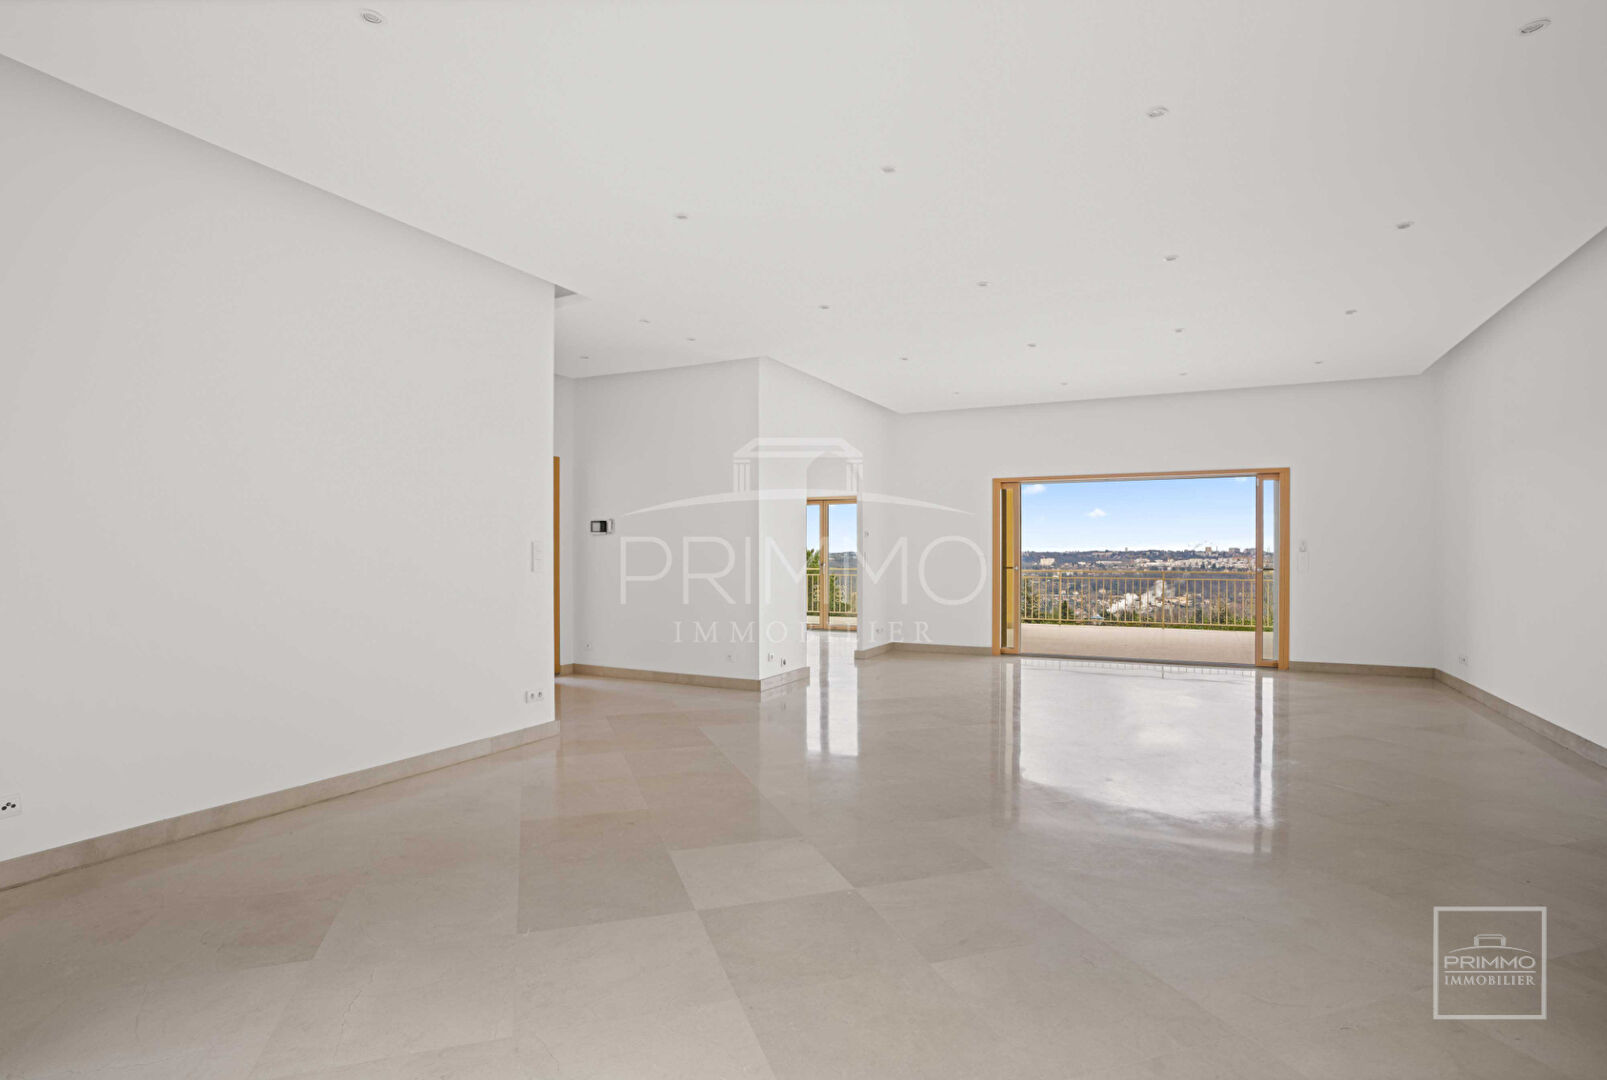 Collonges au Mont d’Or, Maison familiale de 388m² utiles sur 1600m² de terrain avec vue